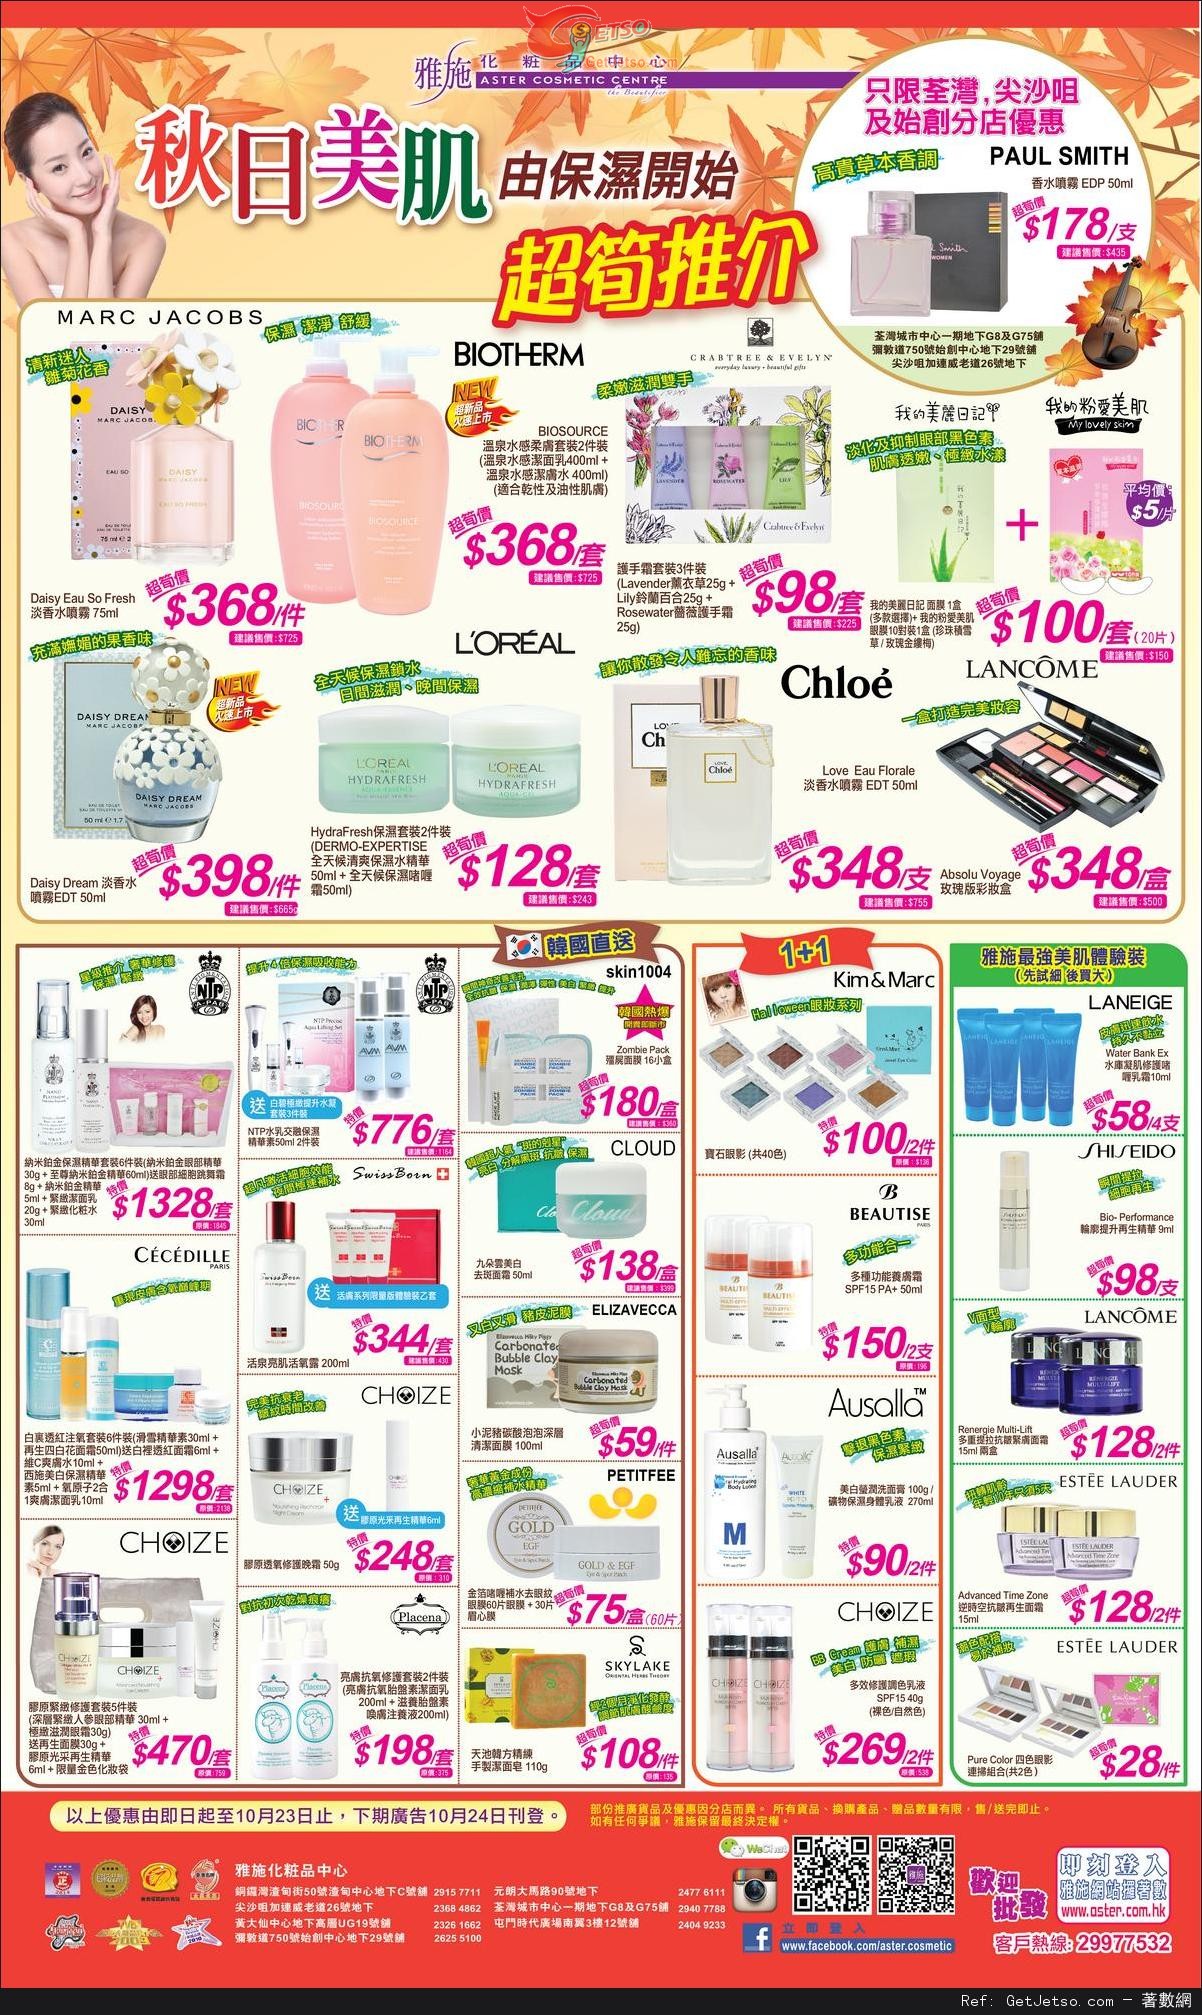 雅施秋日美肌保濕產品購買優惠(至14年10月23日)圖片1